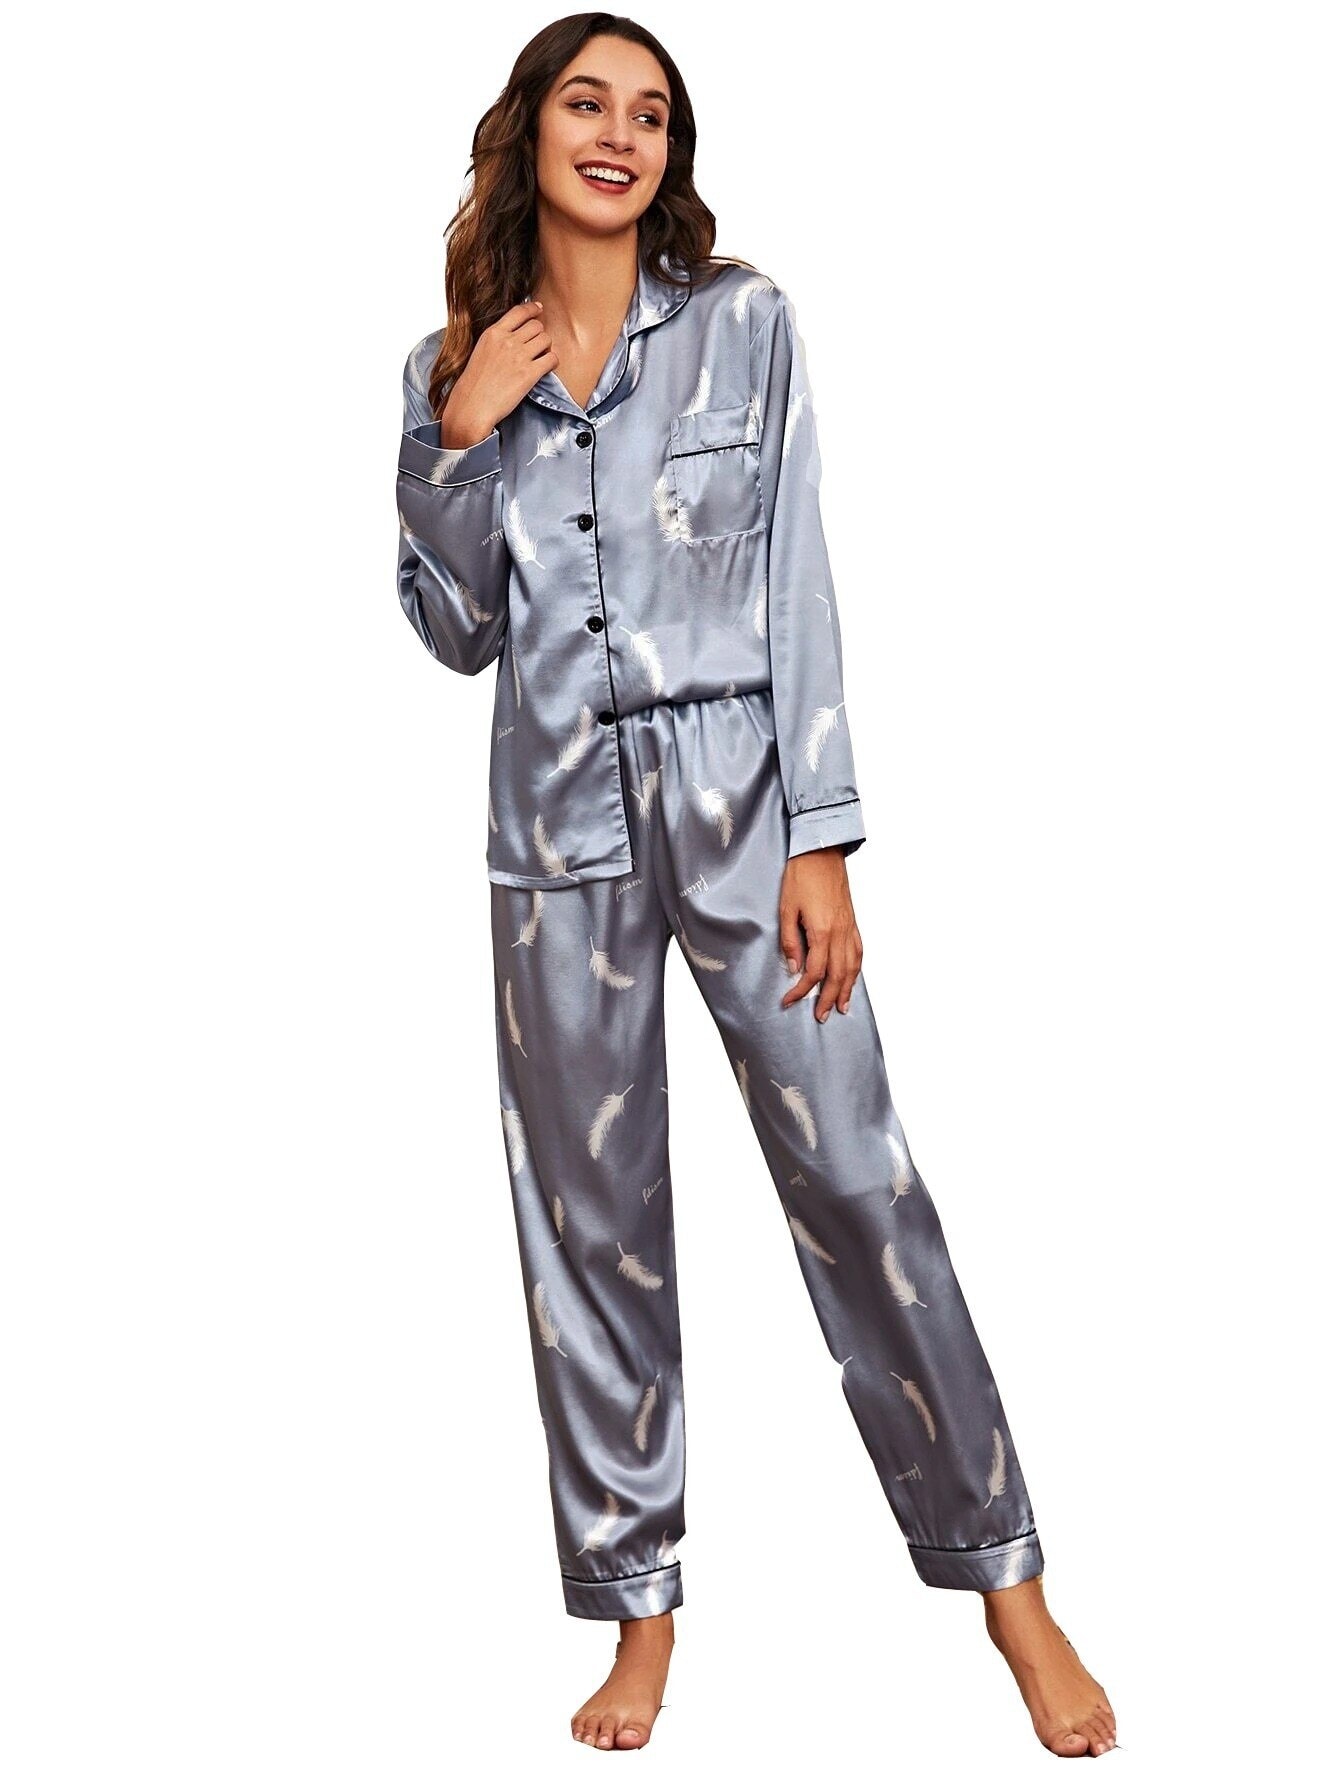 Pyjamassett med skjorte og bukse (13 av 23)